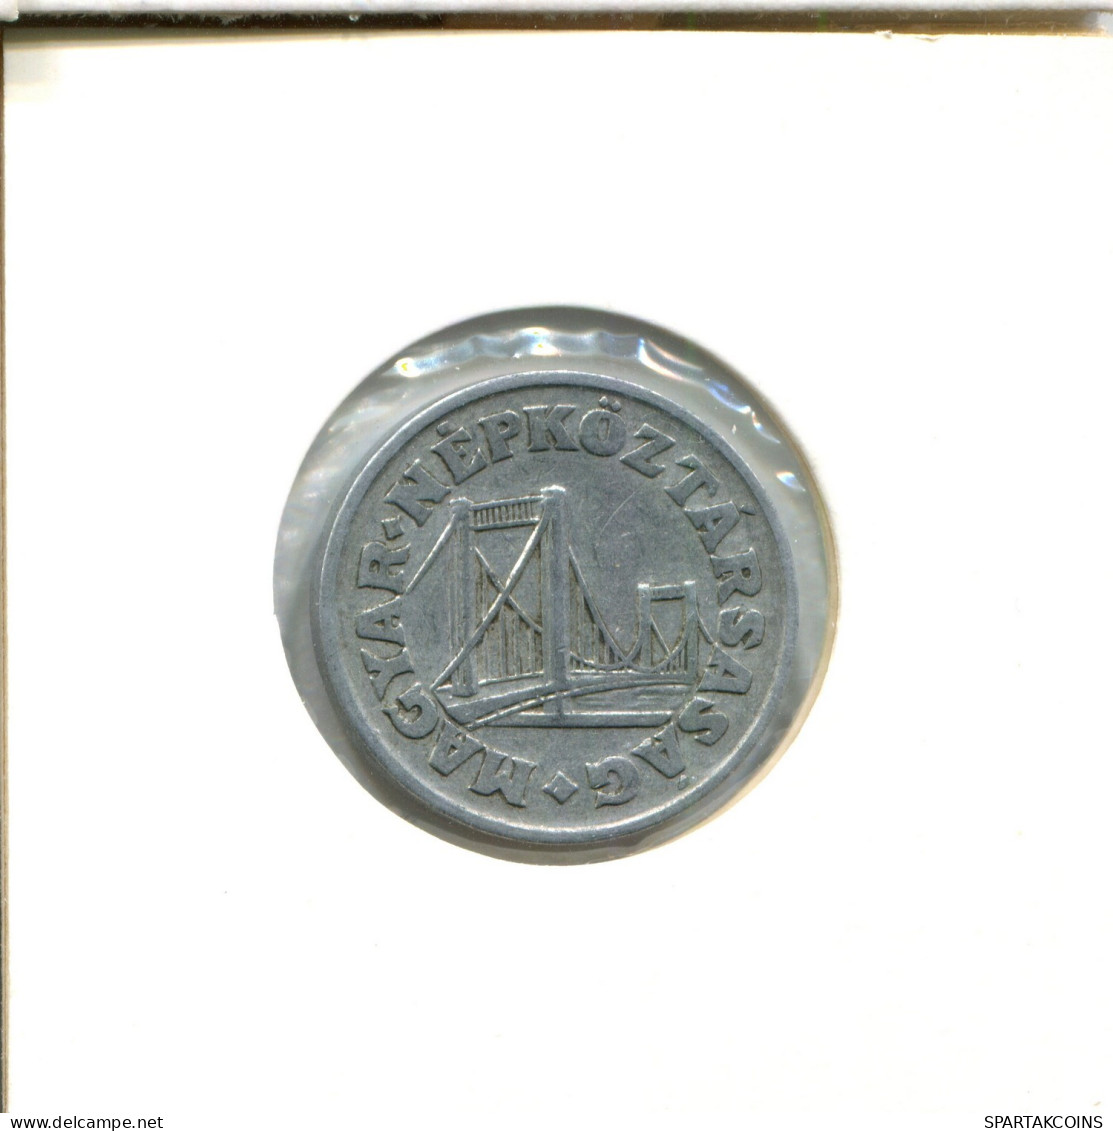 50 FILLER 1969 HUNGARY Coin #AY131.2.U.A - Hongrie